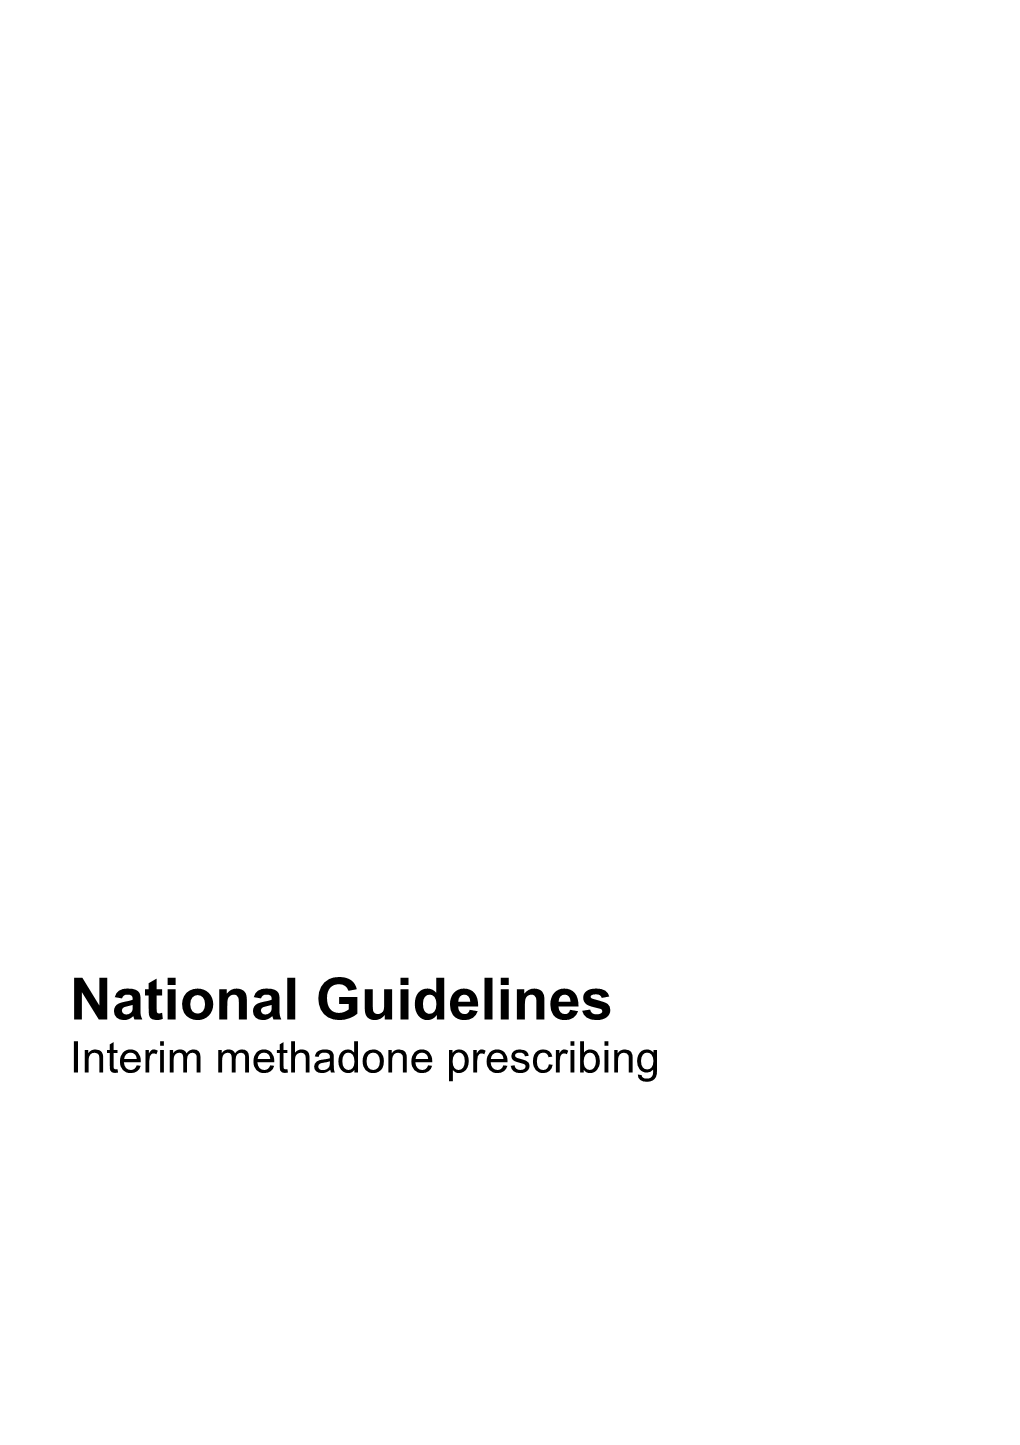 National Guidelines: Interim Methadone Prescribing